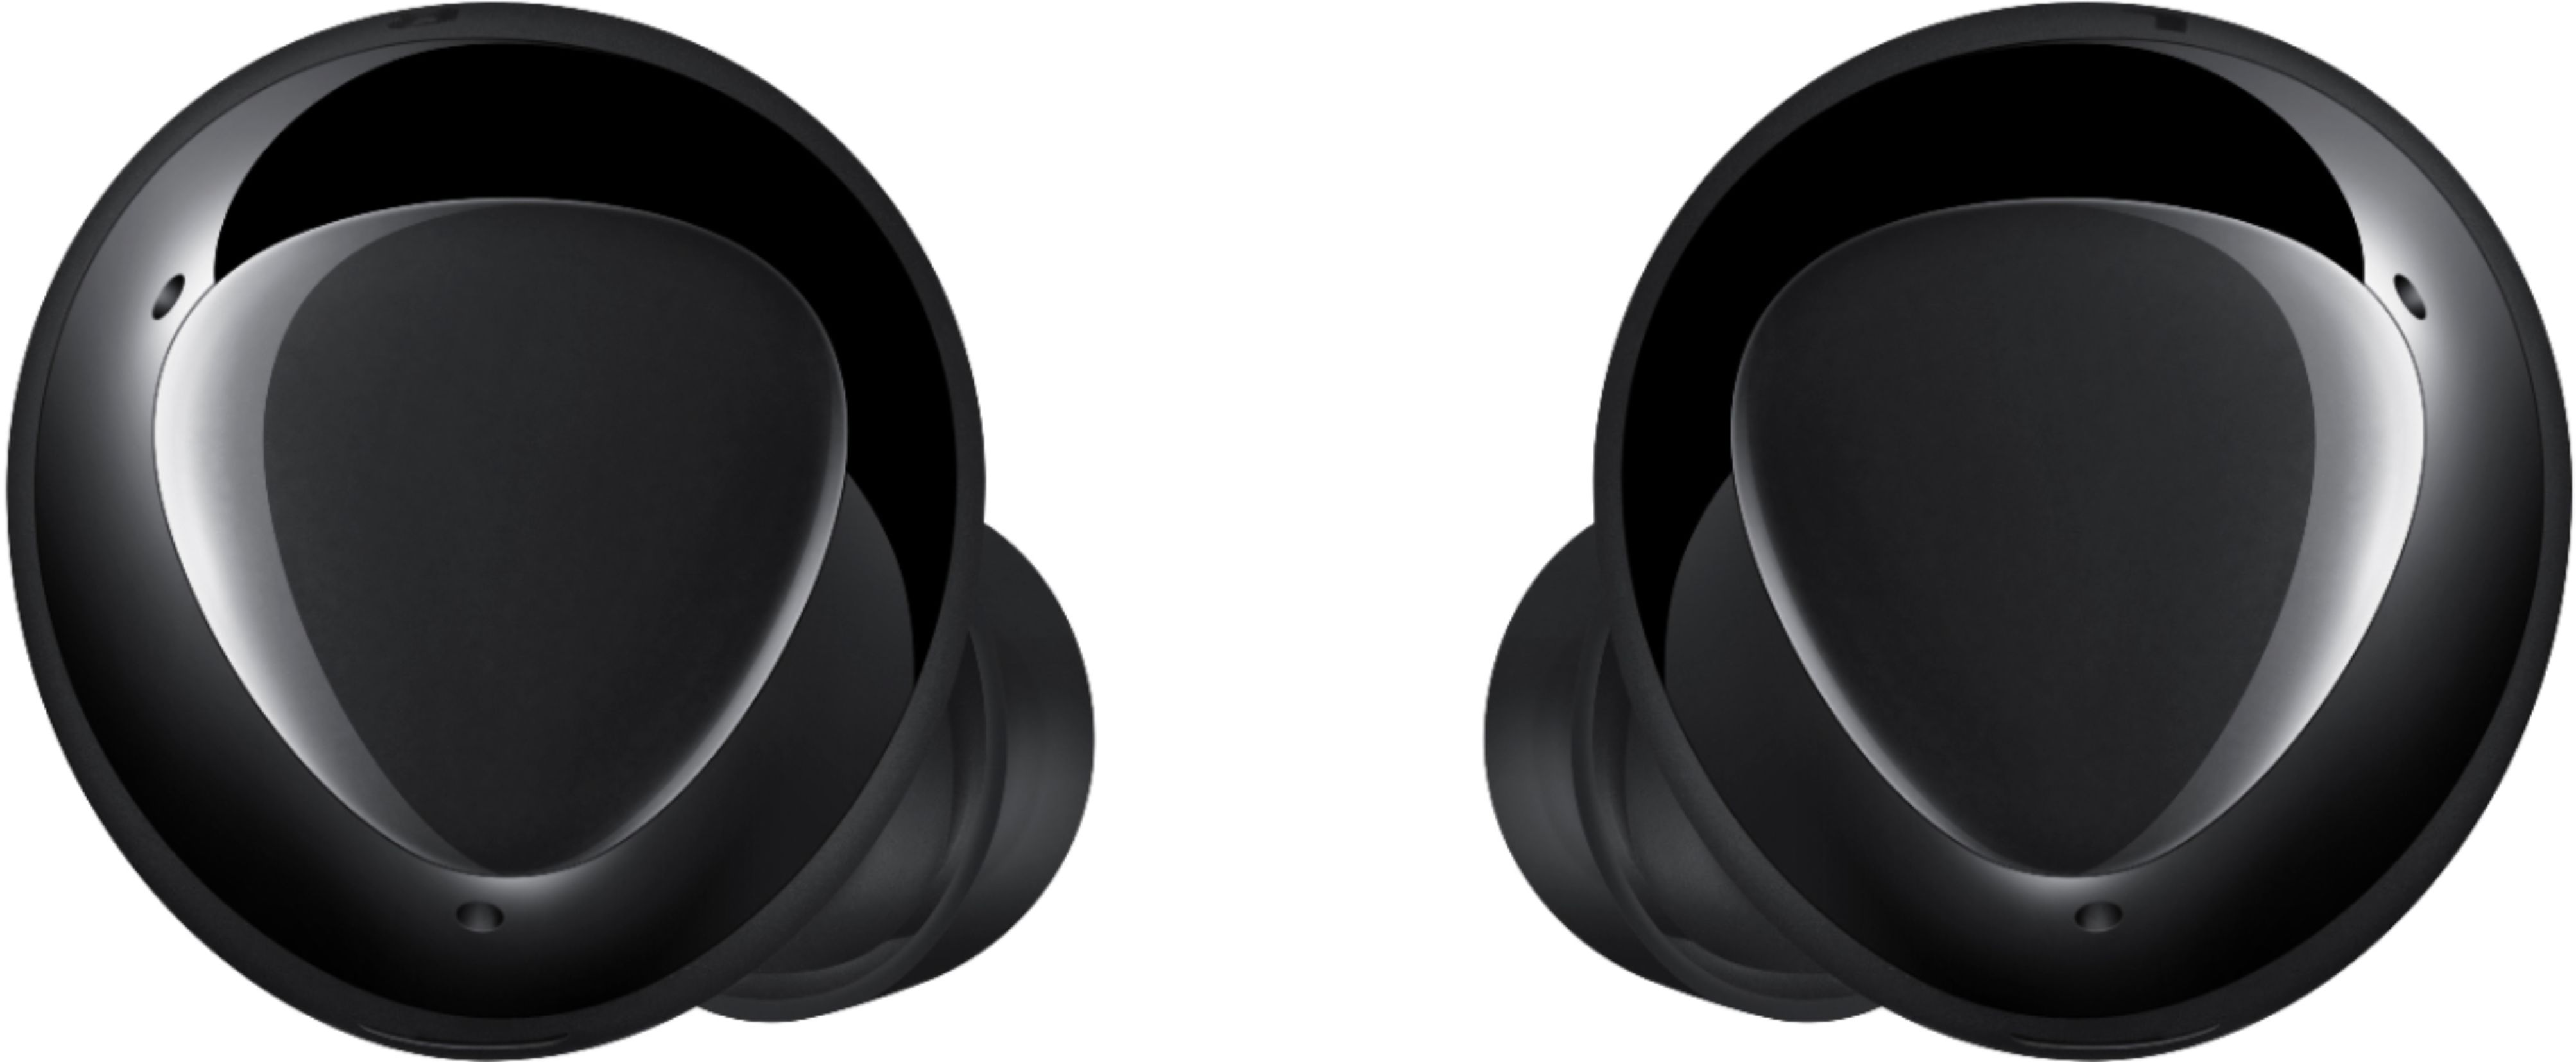 Samsung Geek Squad Certified Refurbished Galaxy Buds Pro True Wireless  Noise Canceling Earbud Headphones Phantom Black GSRF SM-R190NZKAXAR - Best  Buy